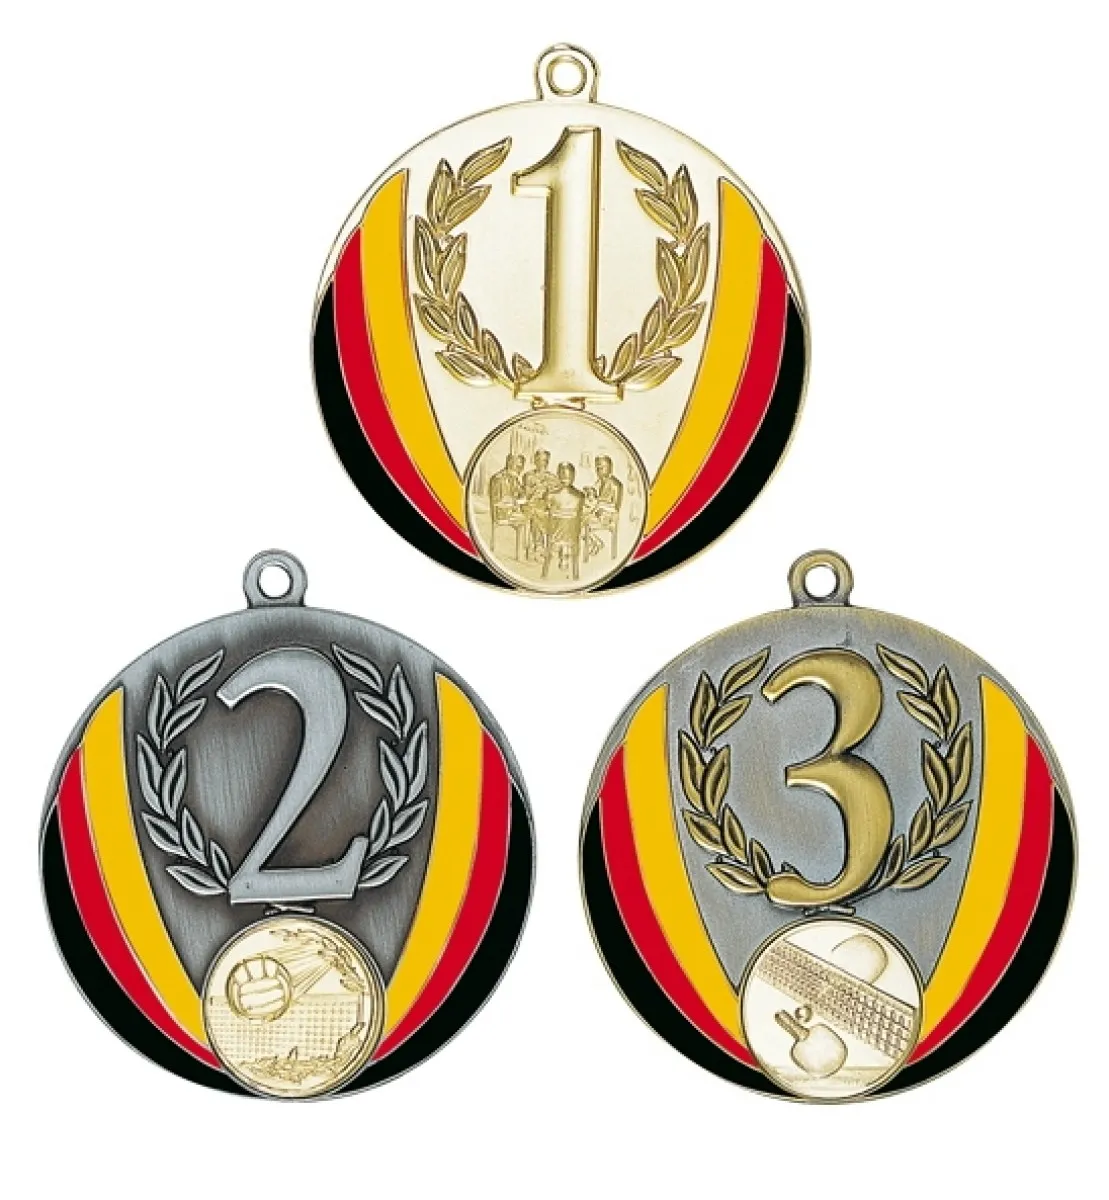 Medaillen mit Deutschlandfahnen in gold, silber oder bronze. Durchmesser ca. 7 cm. Emblemgröße 2,5 cm.